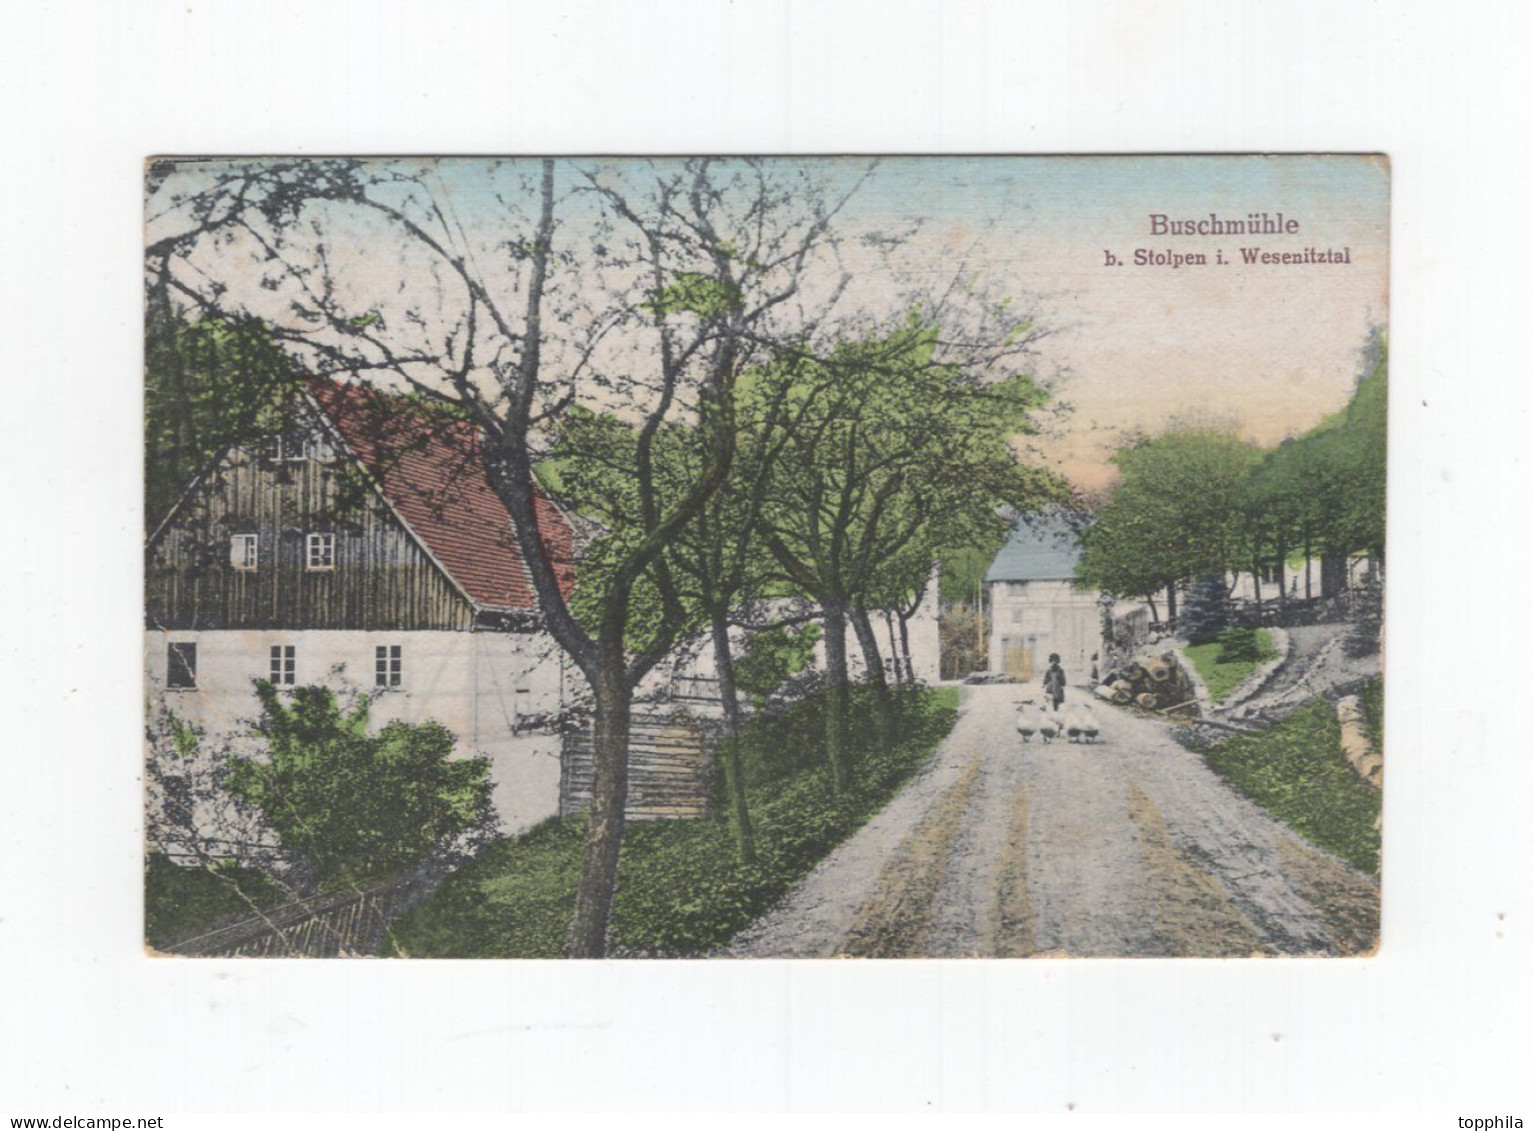 1928 Sachsen Farbige Photokarte Buschmühle  B. Stolpen Wesenitztal Landpoststempel Schmiedefeld - Radeberg